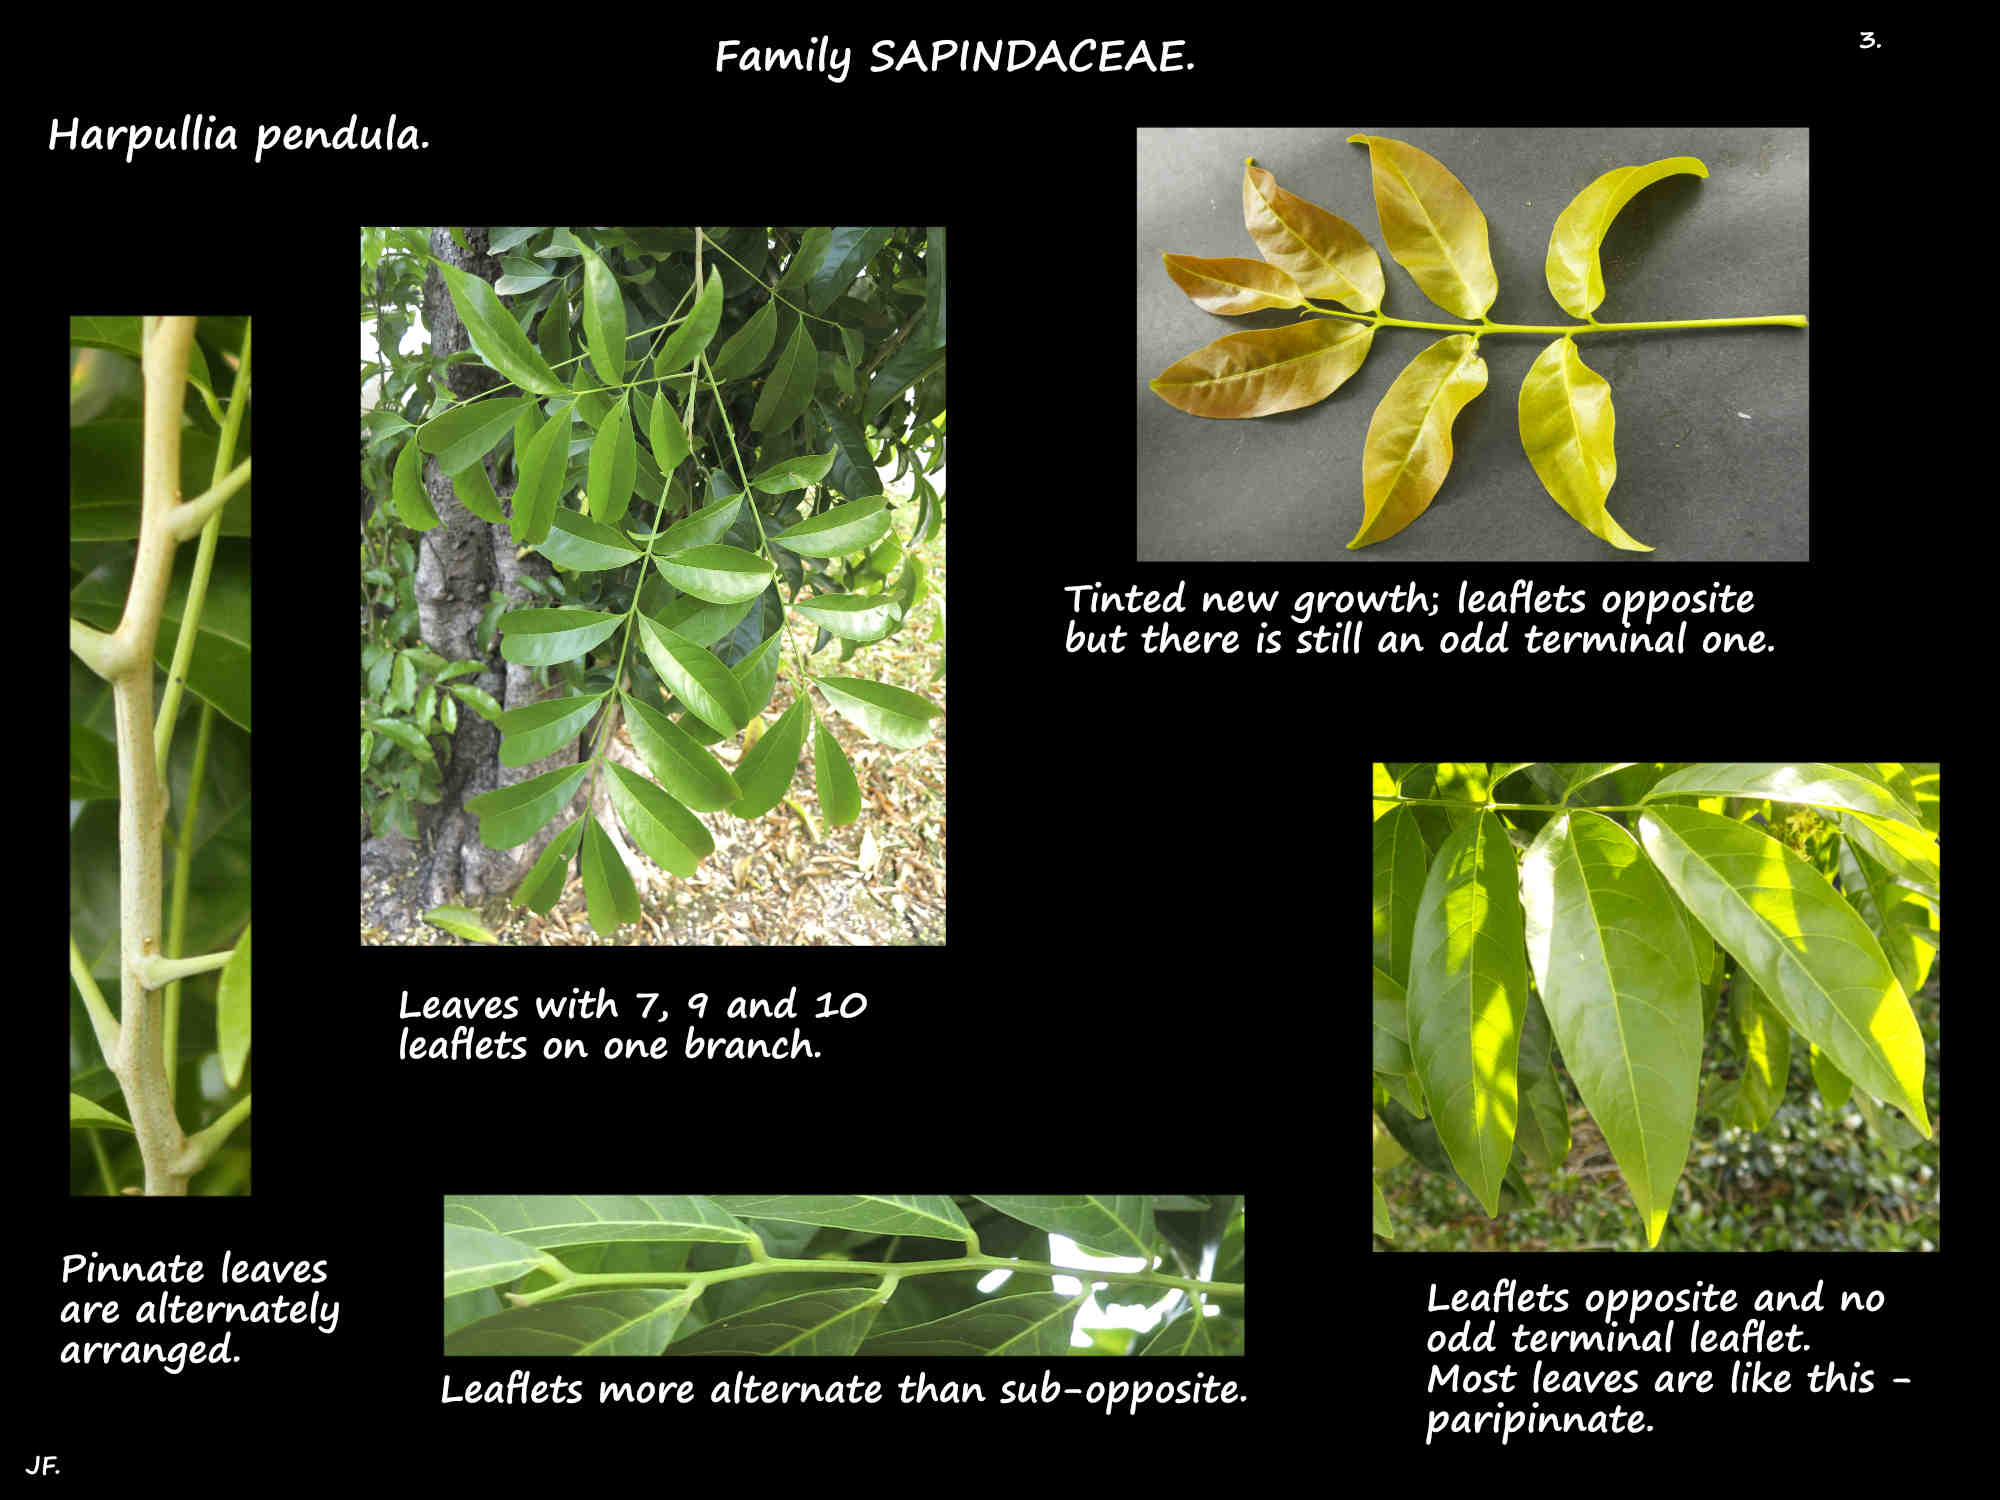 3 Harpullia pendula pinnate leaves